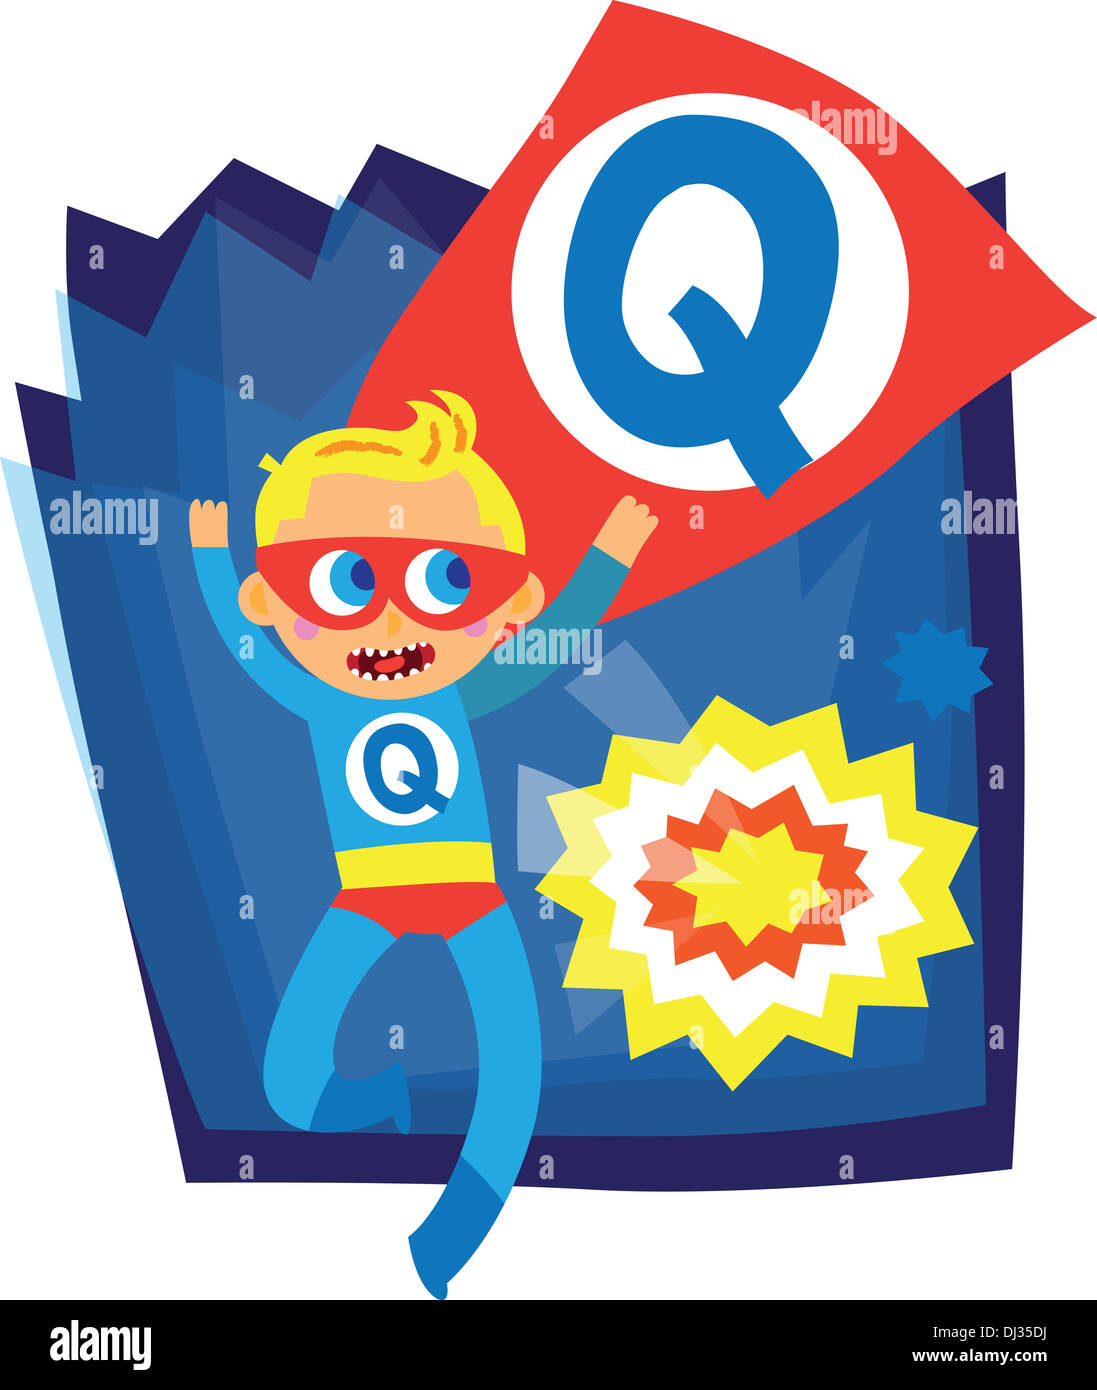 Illustrazione del ragazzo in Q costume da supereroe Foto Stock